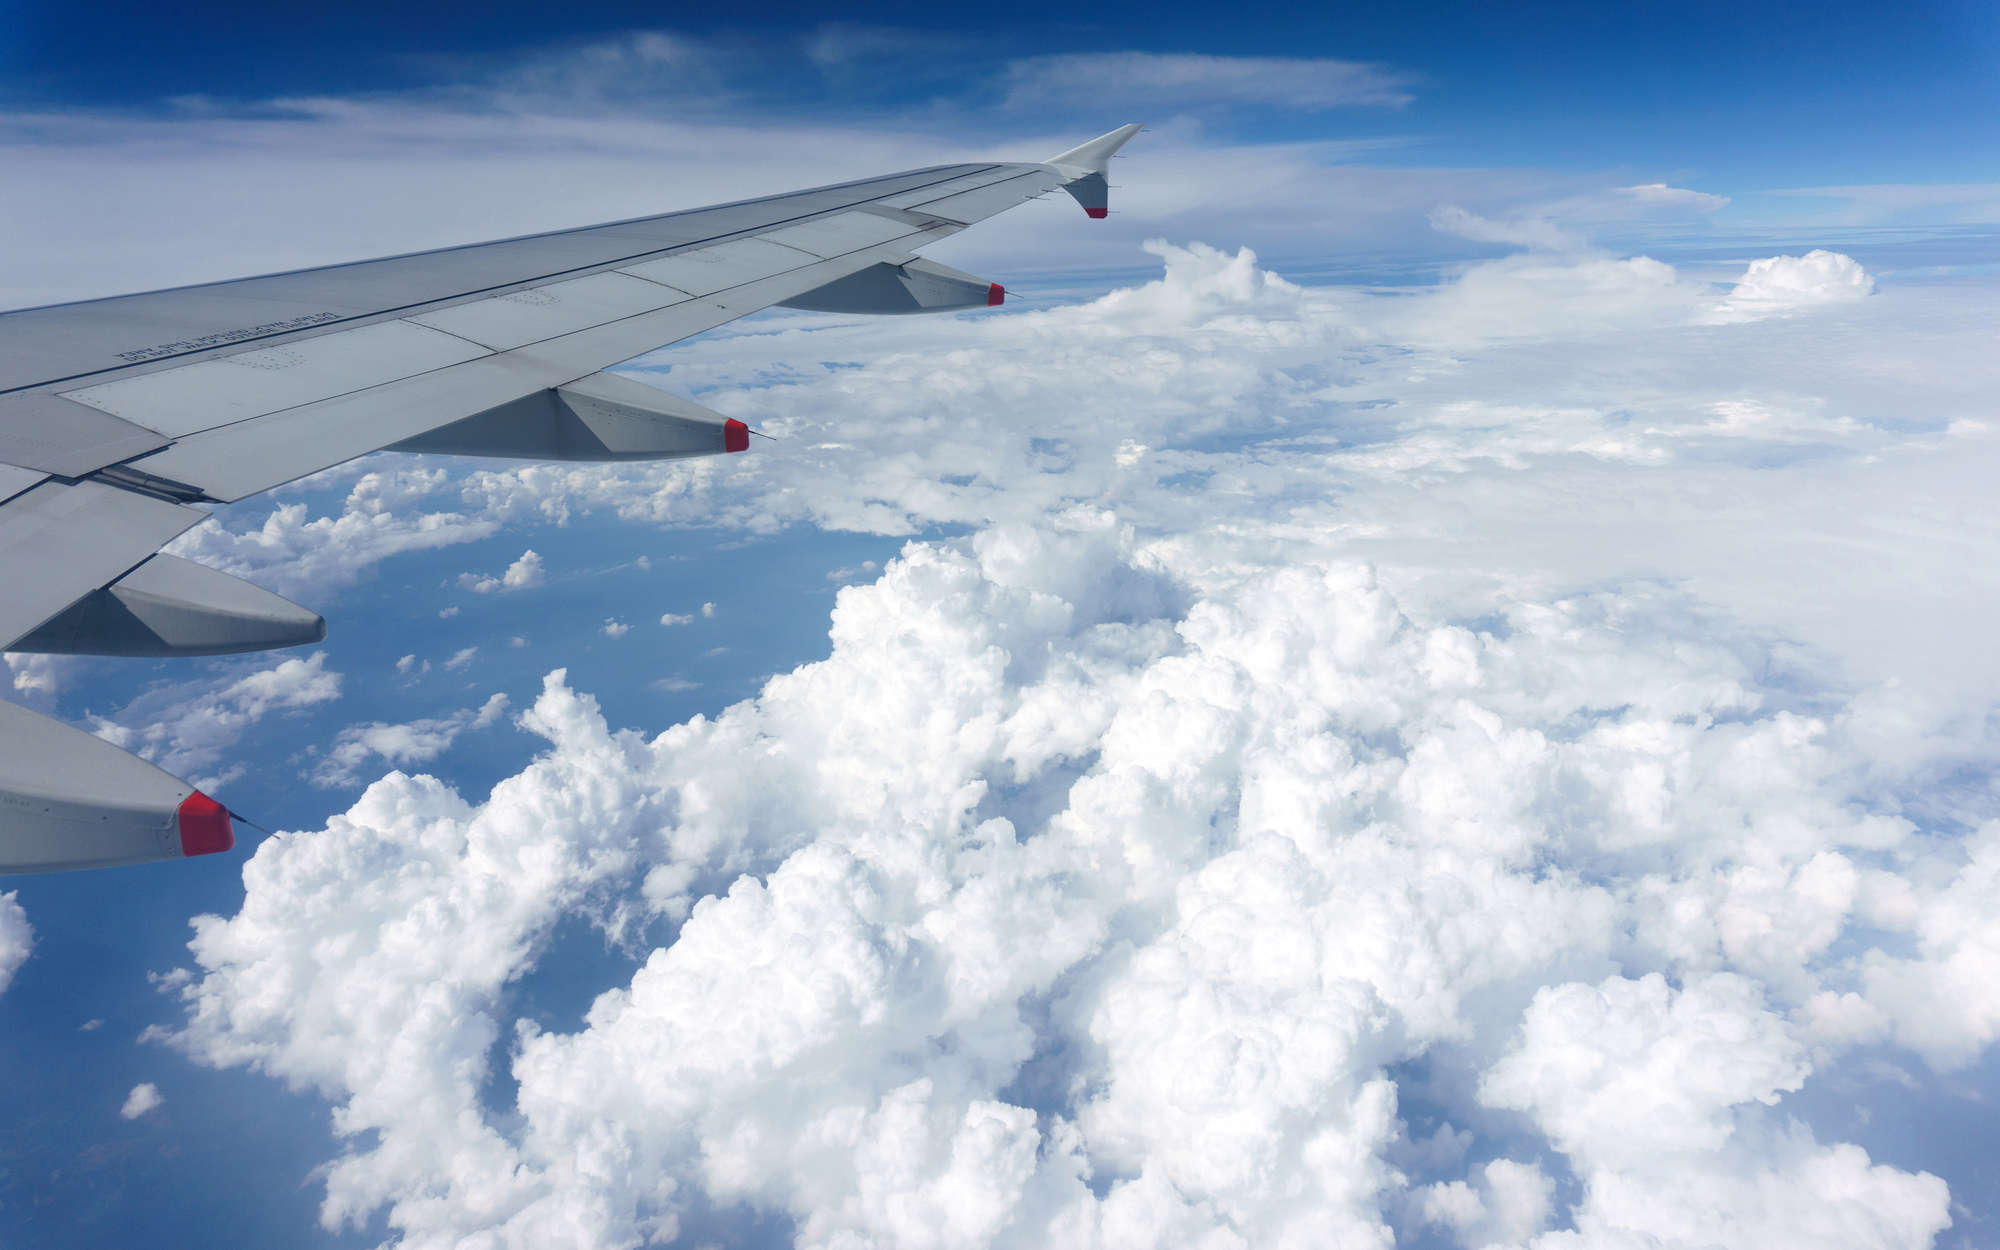             Digital behang Vliegtuig boven de wolken - parelmoer glad vlies
        